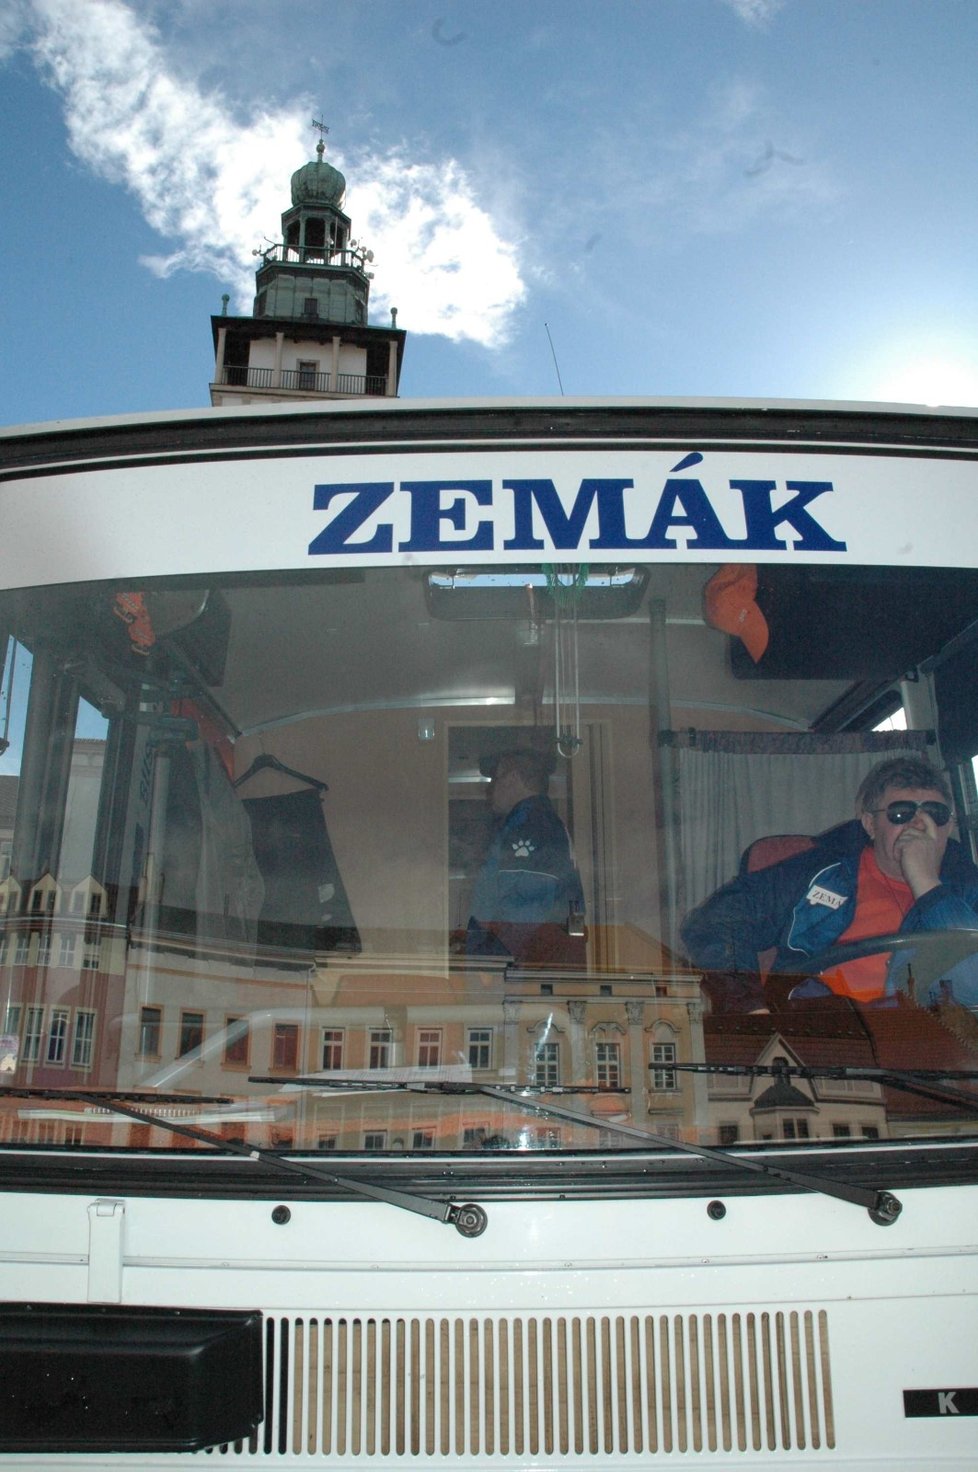 Volby ČSSD , Miloš Zeman, Zemák, Vyškov, autobus